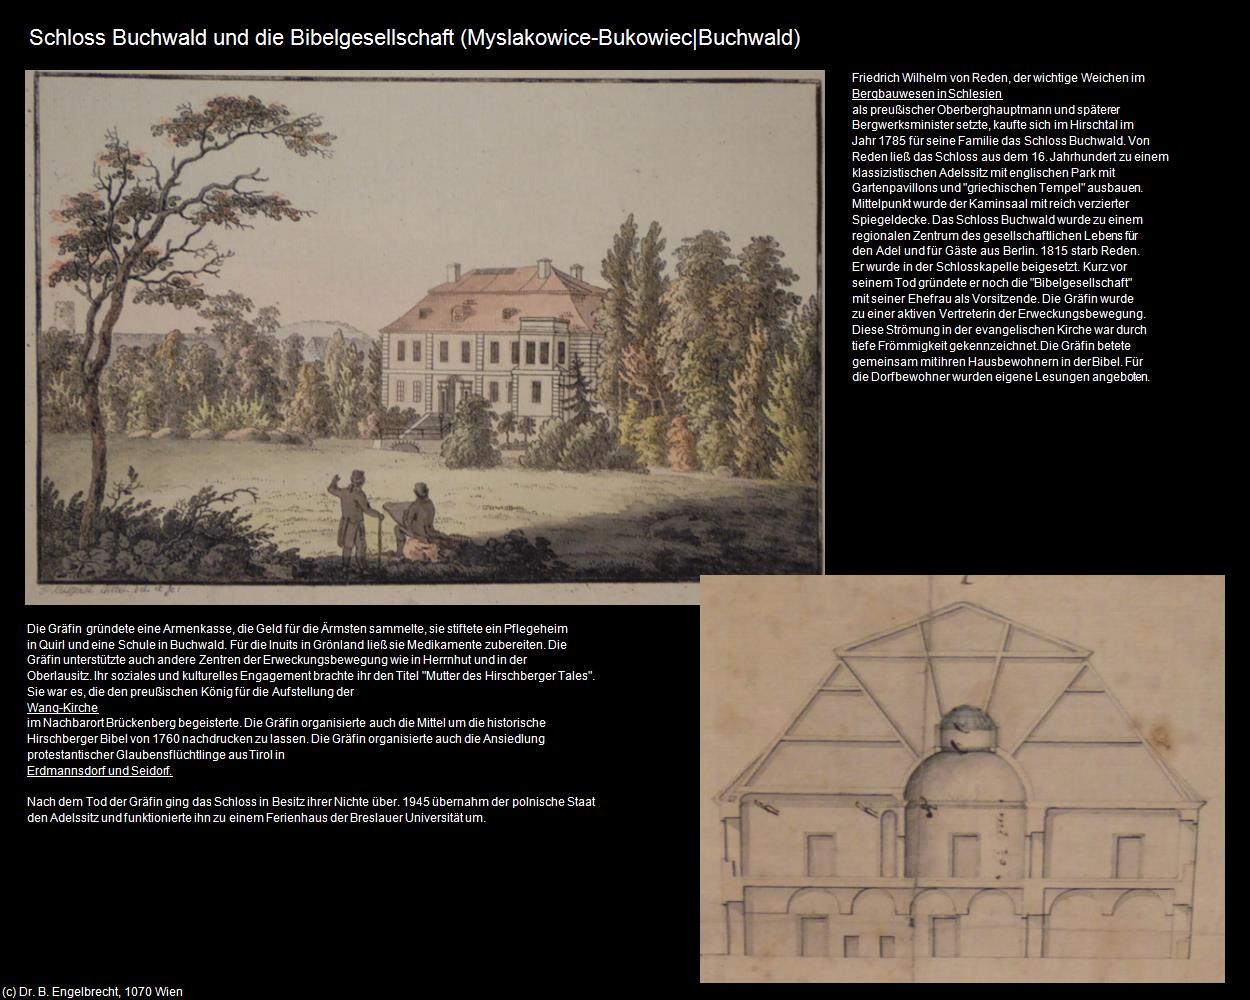 Schloss Buchwald und die Bibelgesellschaft (Bukowiec|Buchwald) (Myslakowice|Erdmannsdorf) in POLEN-Schlesien(c)B.Engelbrecht